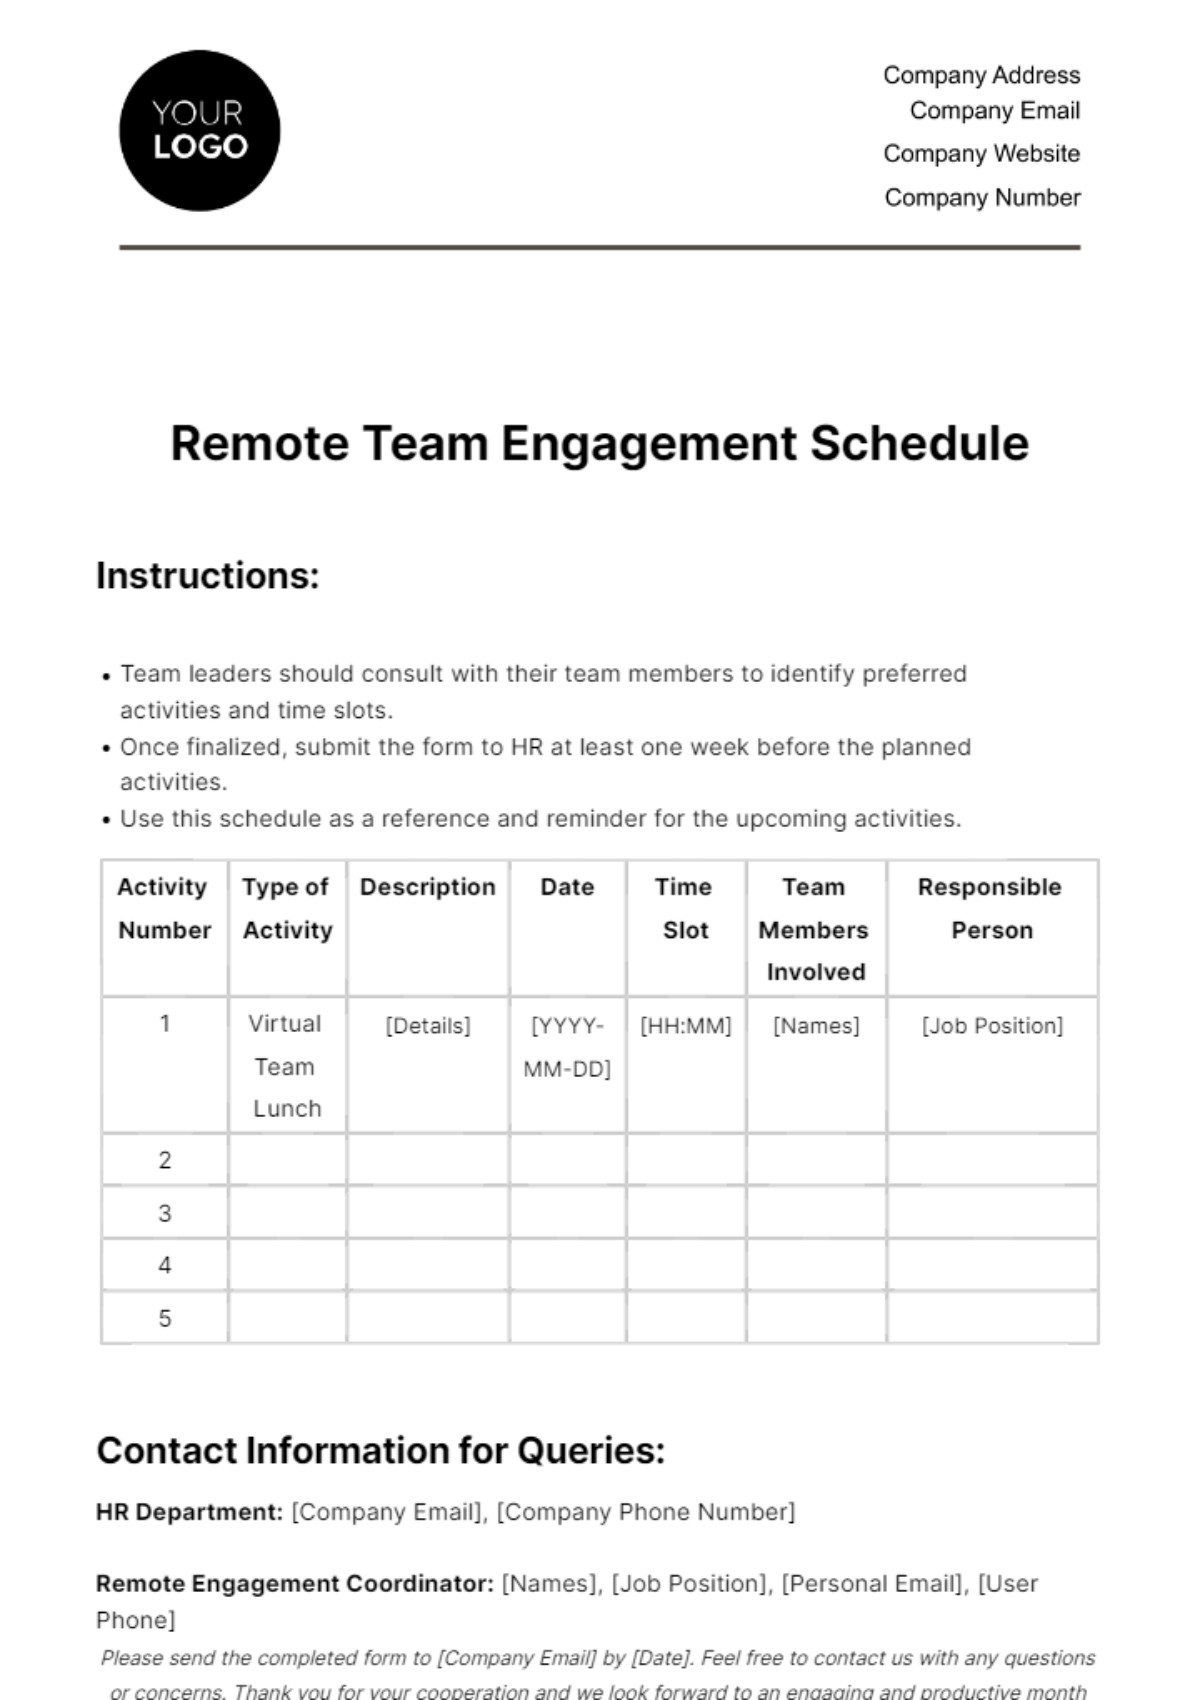 Remote Team Engagement Schedule HR Template